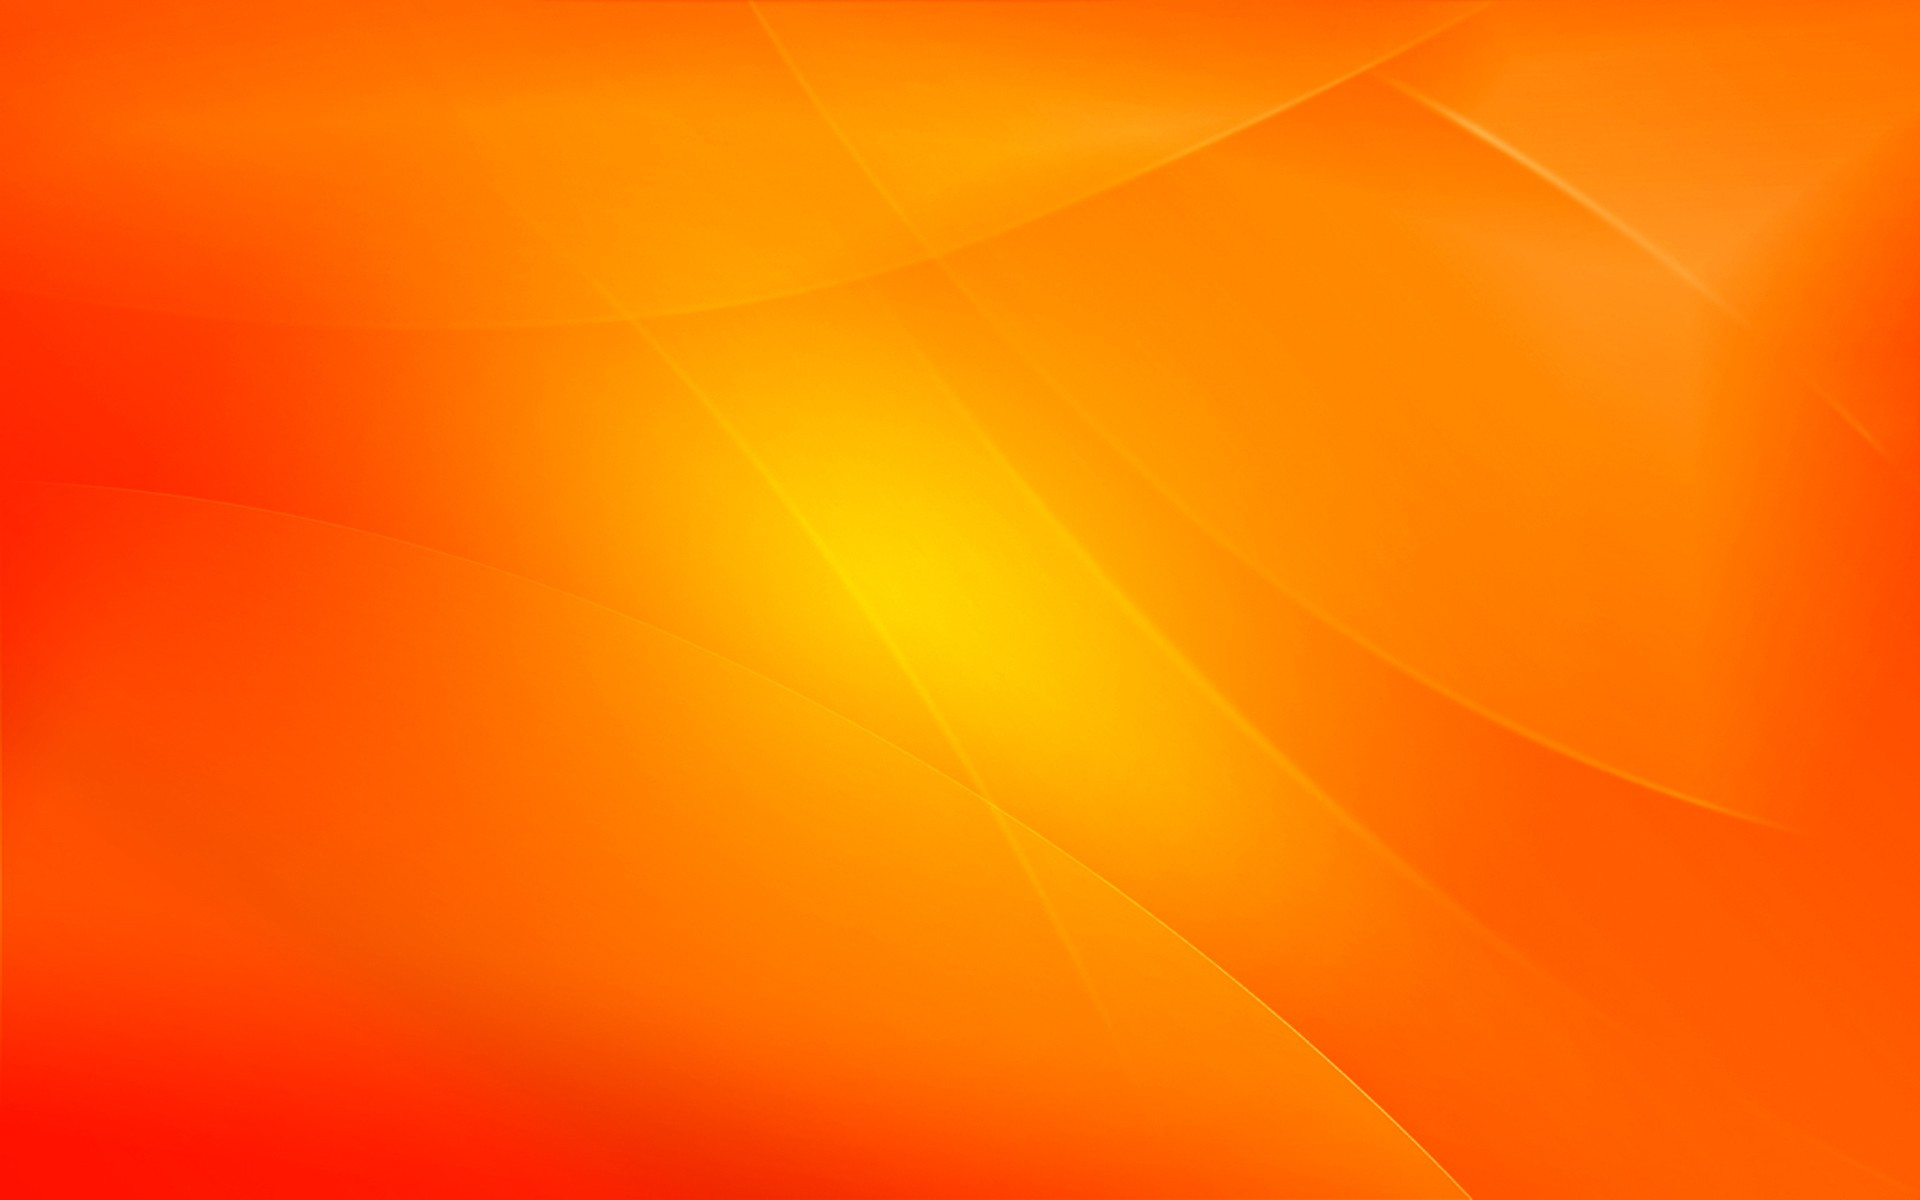 Hình nền cam: Hãy tản mình với khung cảnh đầy rực rỡ vàng cam trên màn hình điện thoại của bạn. Hình nền cam sẽ mang tới cho bạn sự tươi vui, sức sống và năng lượng tích cực cho ngày mới.